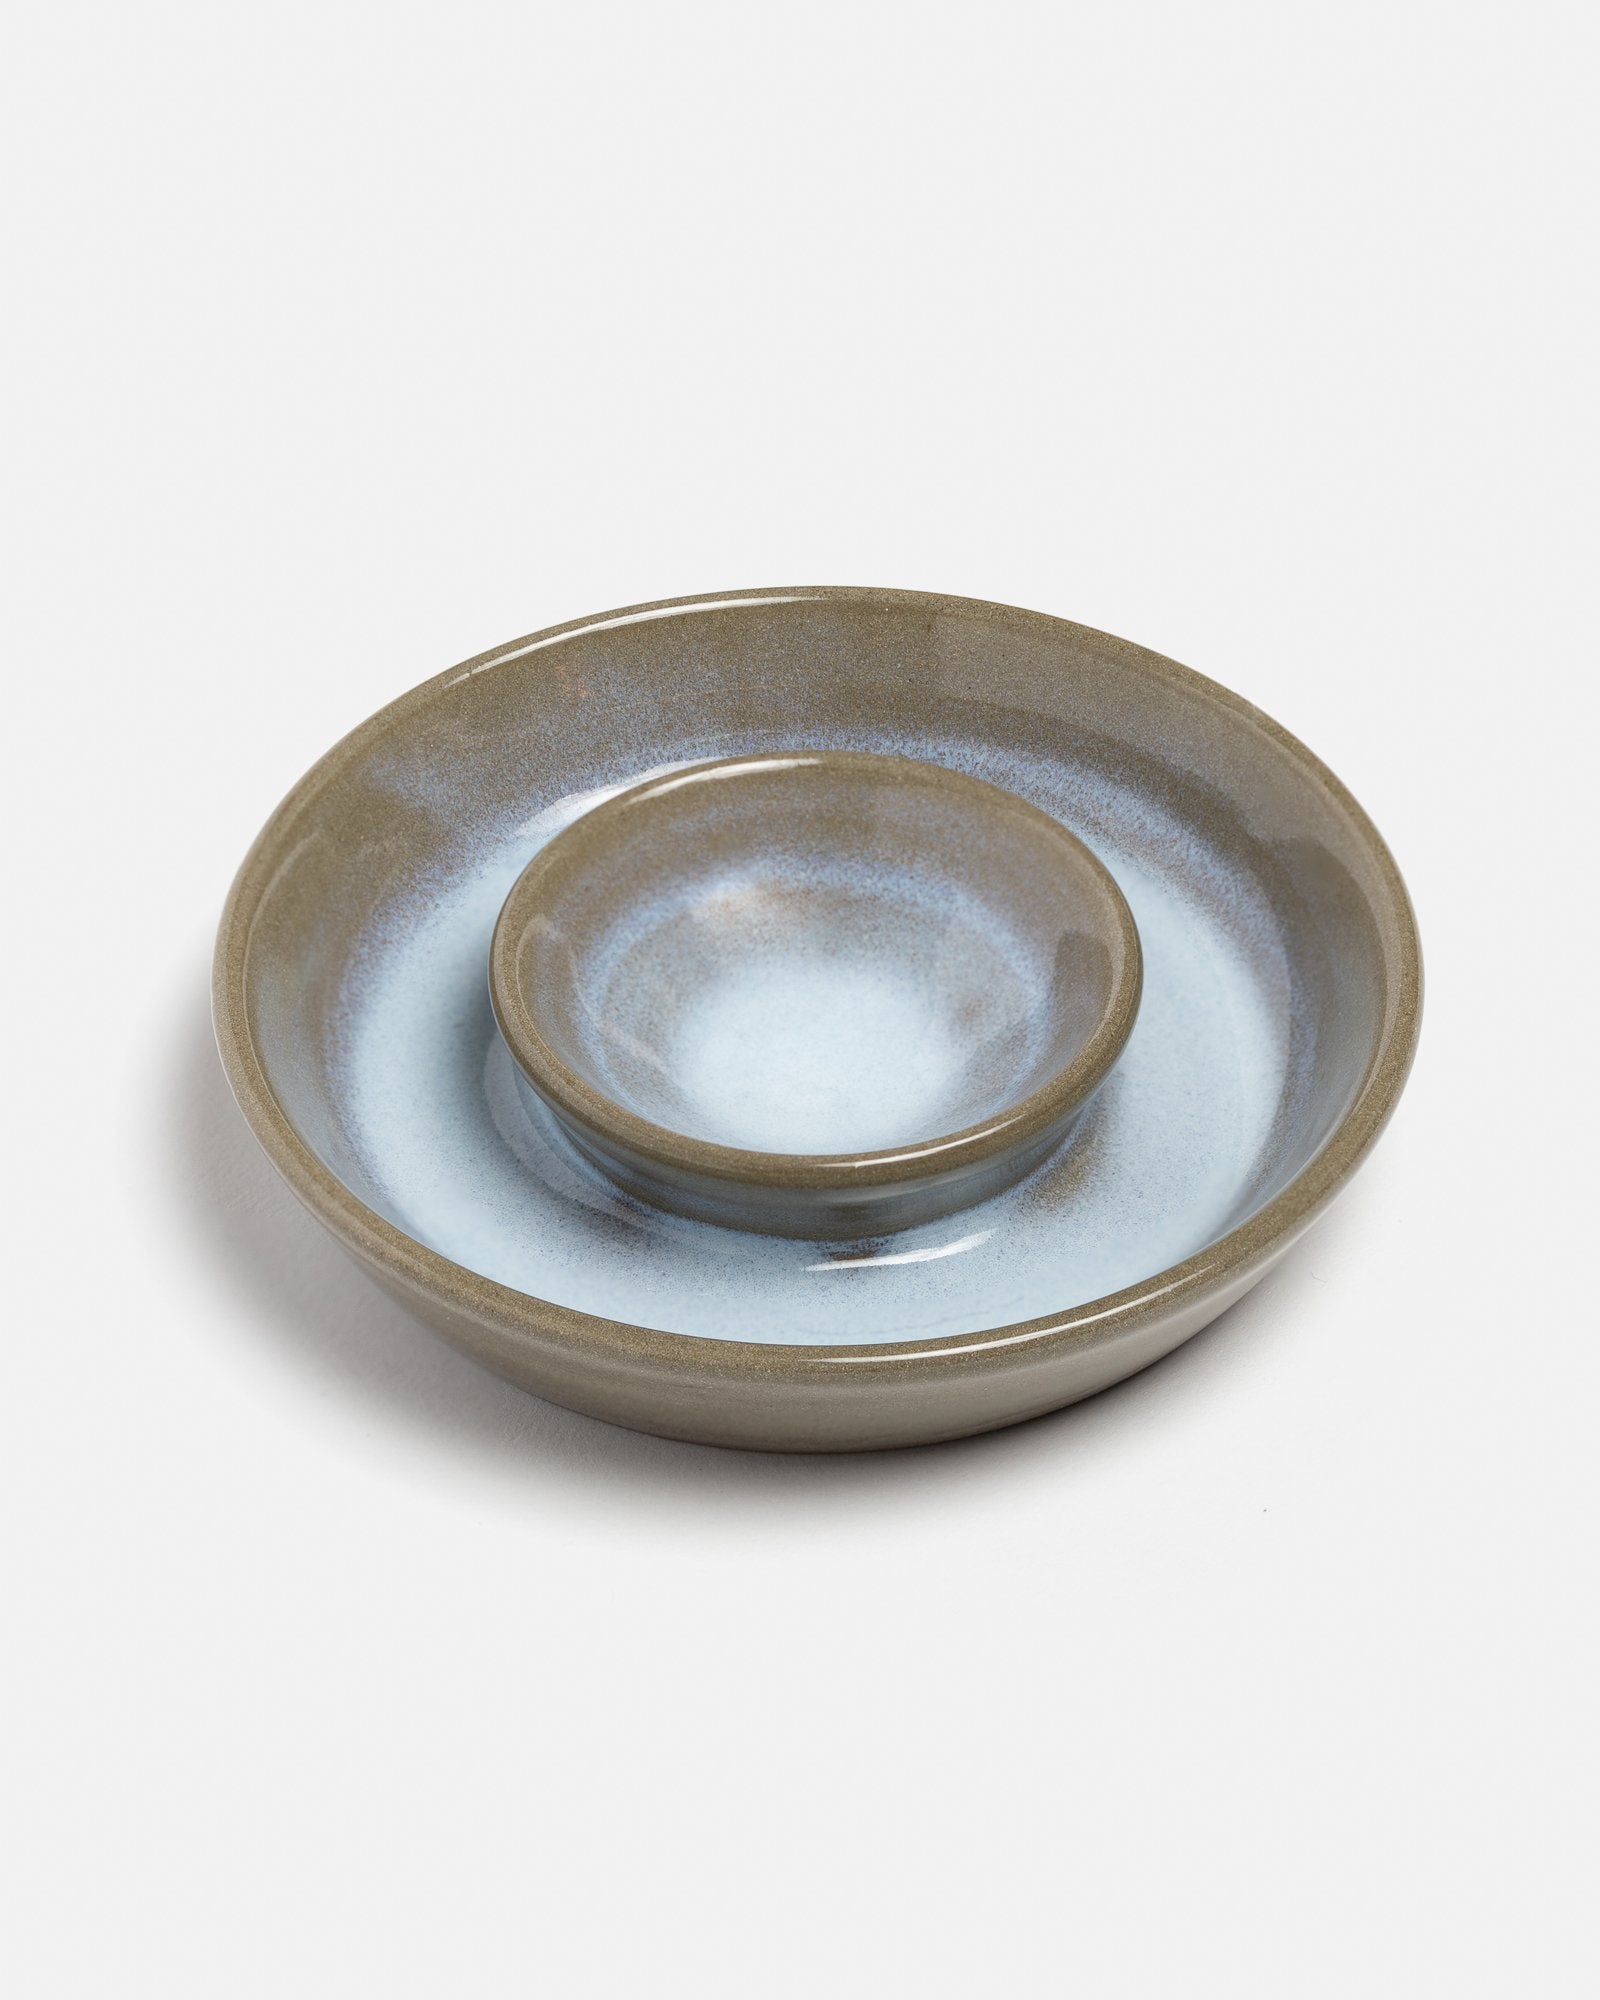 MYEL x AMK Ceramic Jewelry Dish in Grey